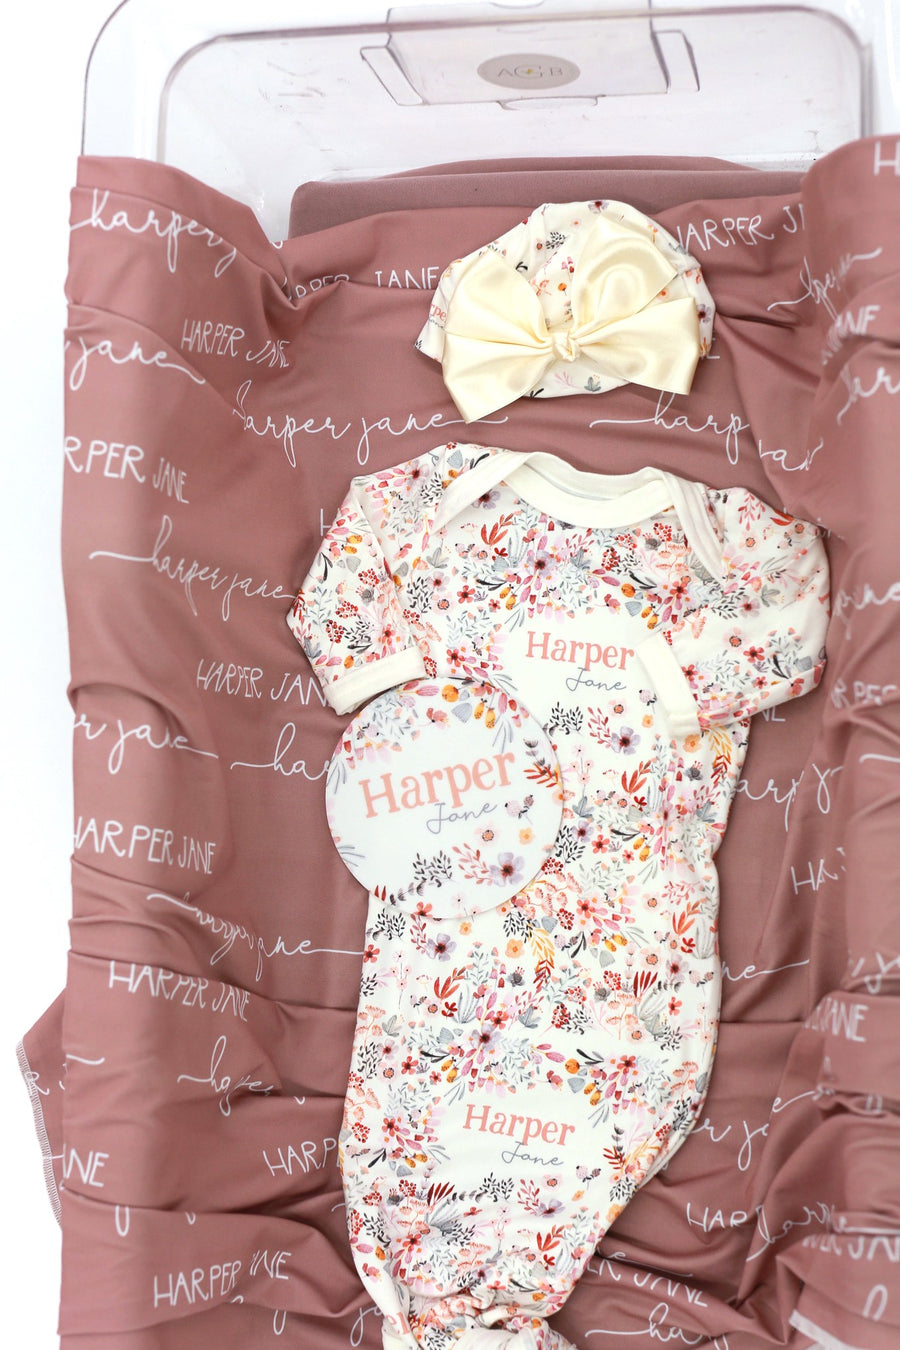 Harper Jane 4-Piece Baby Gift Set